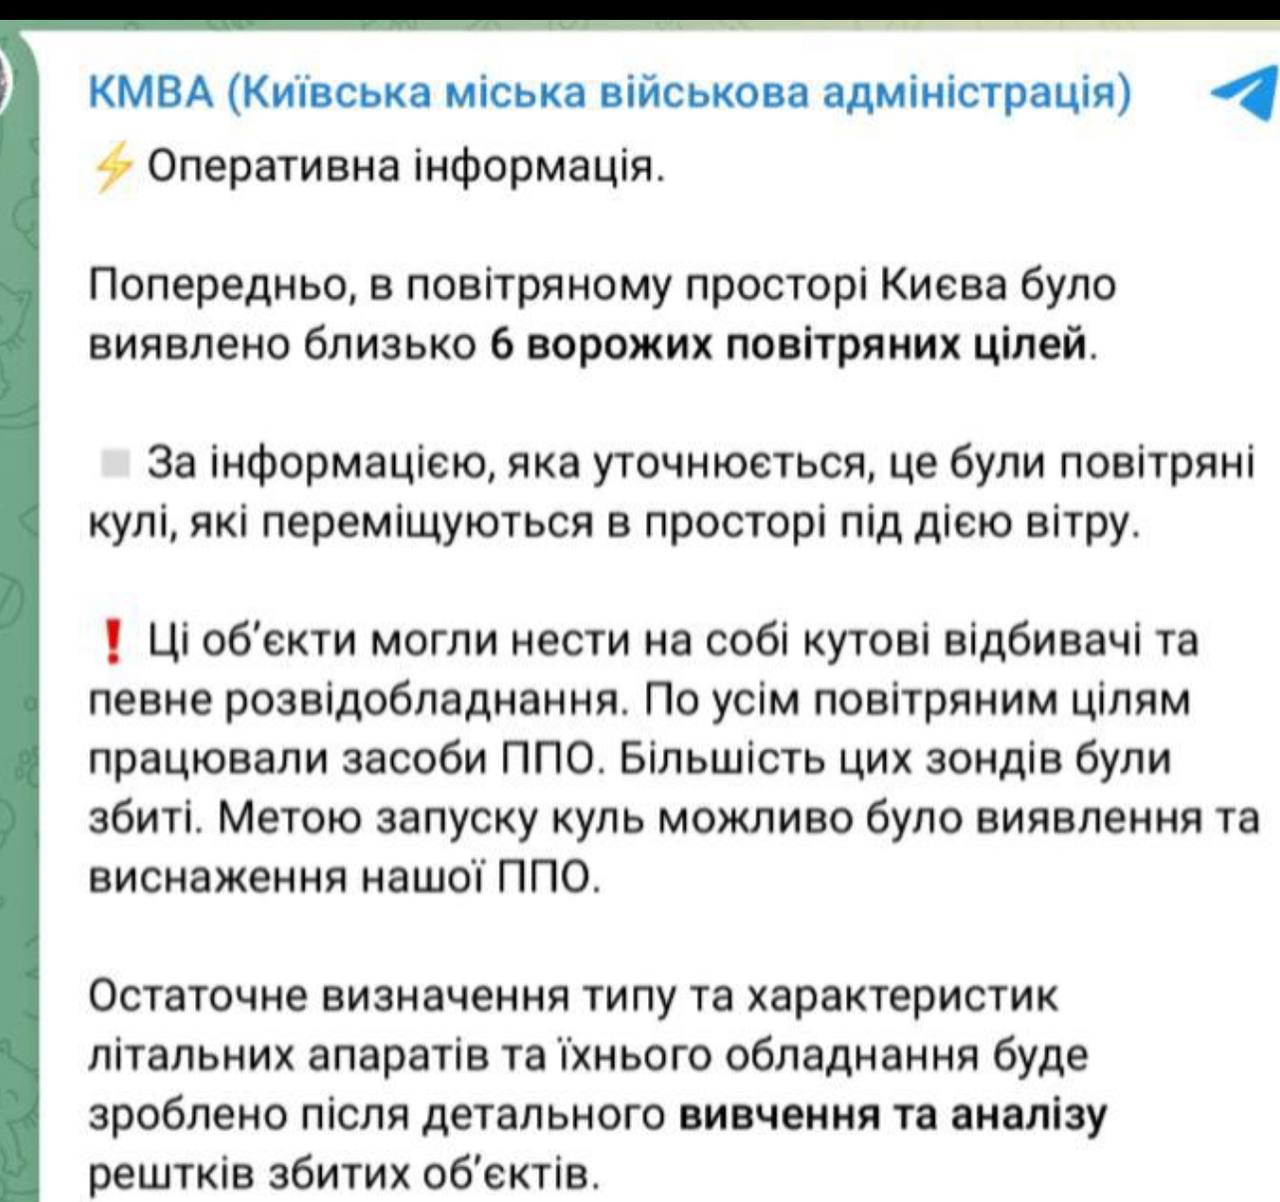 Труха телеграмм украина на русском языке смотреть онлайн бесплатно фото 16